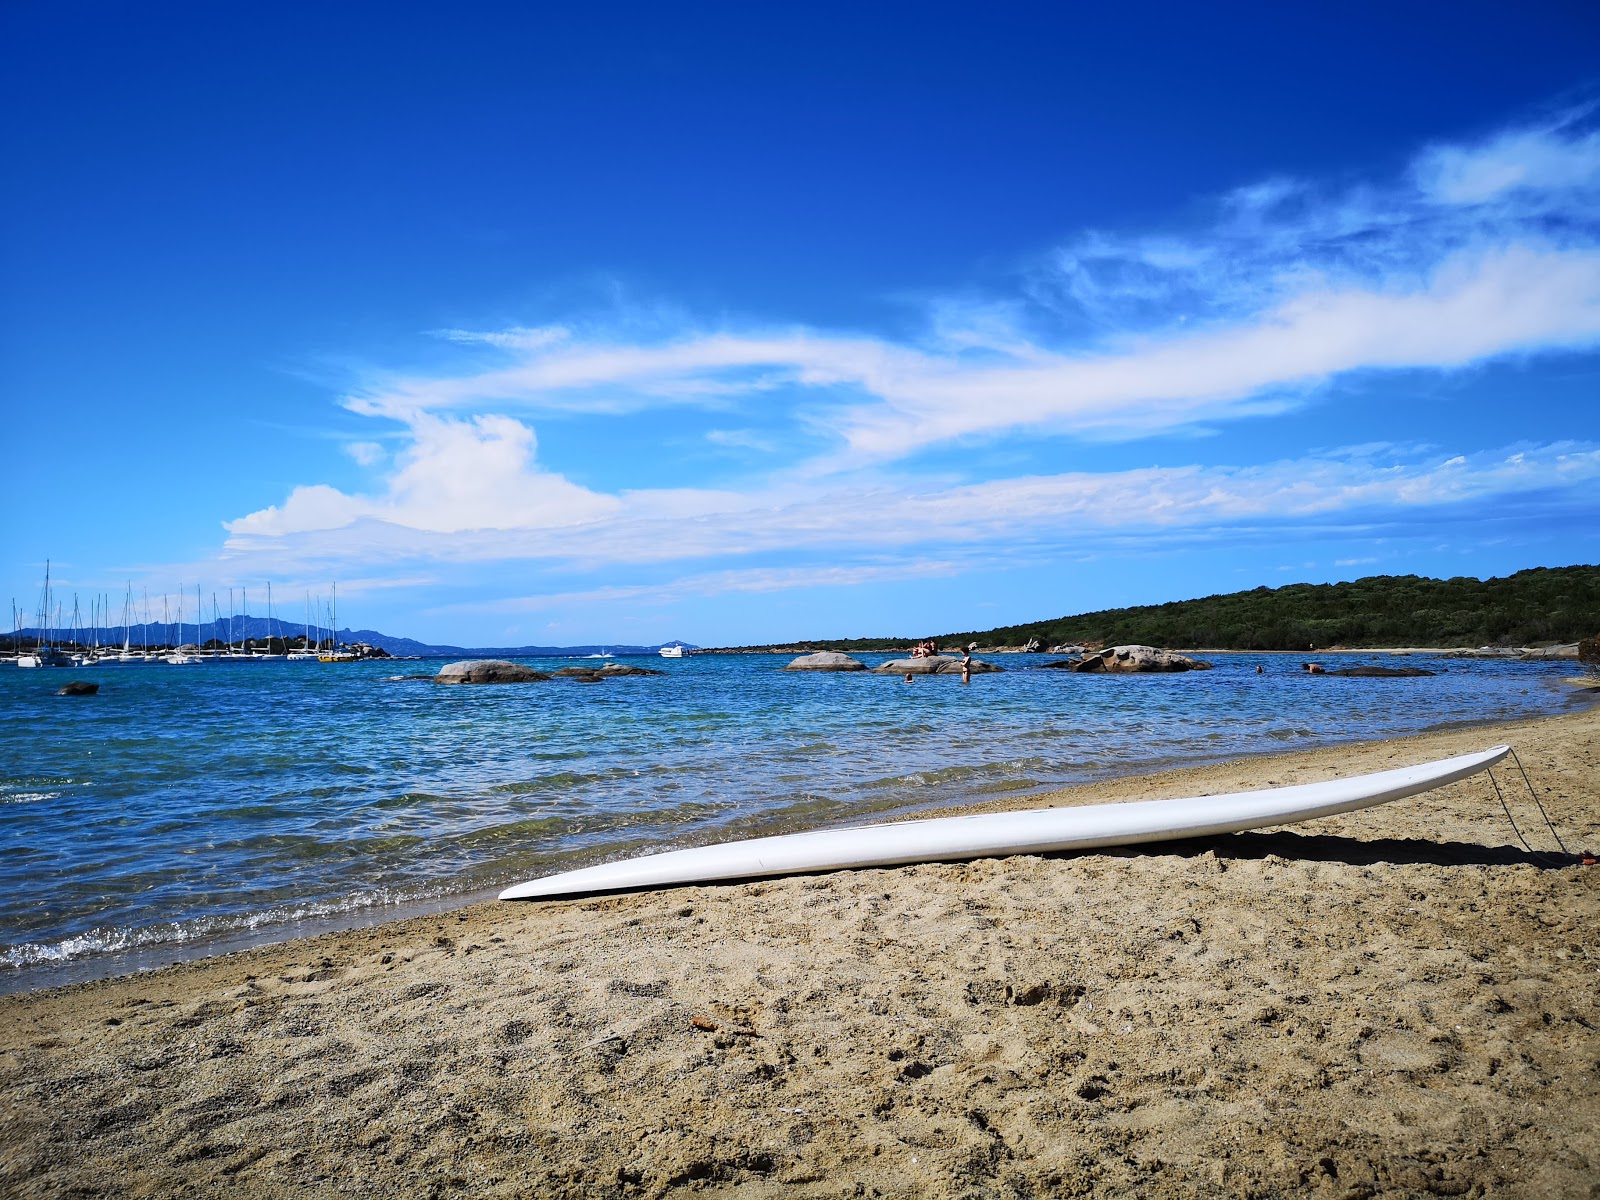 Foto von Spiaggia de Bahas - beliebter Ort unter Entspannungskennern